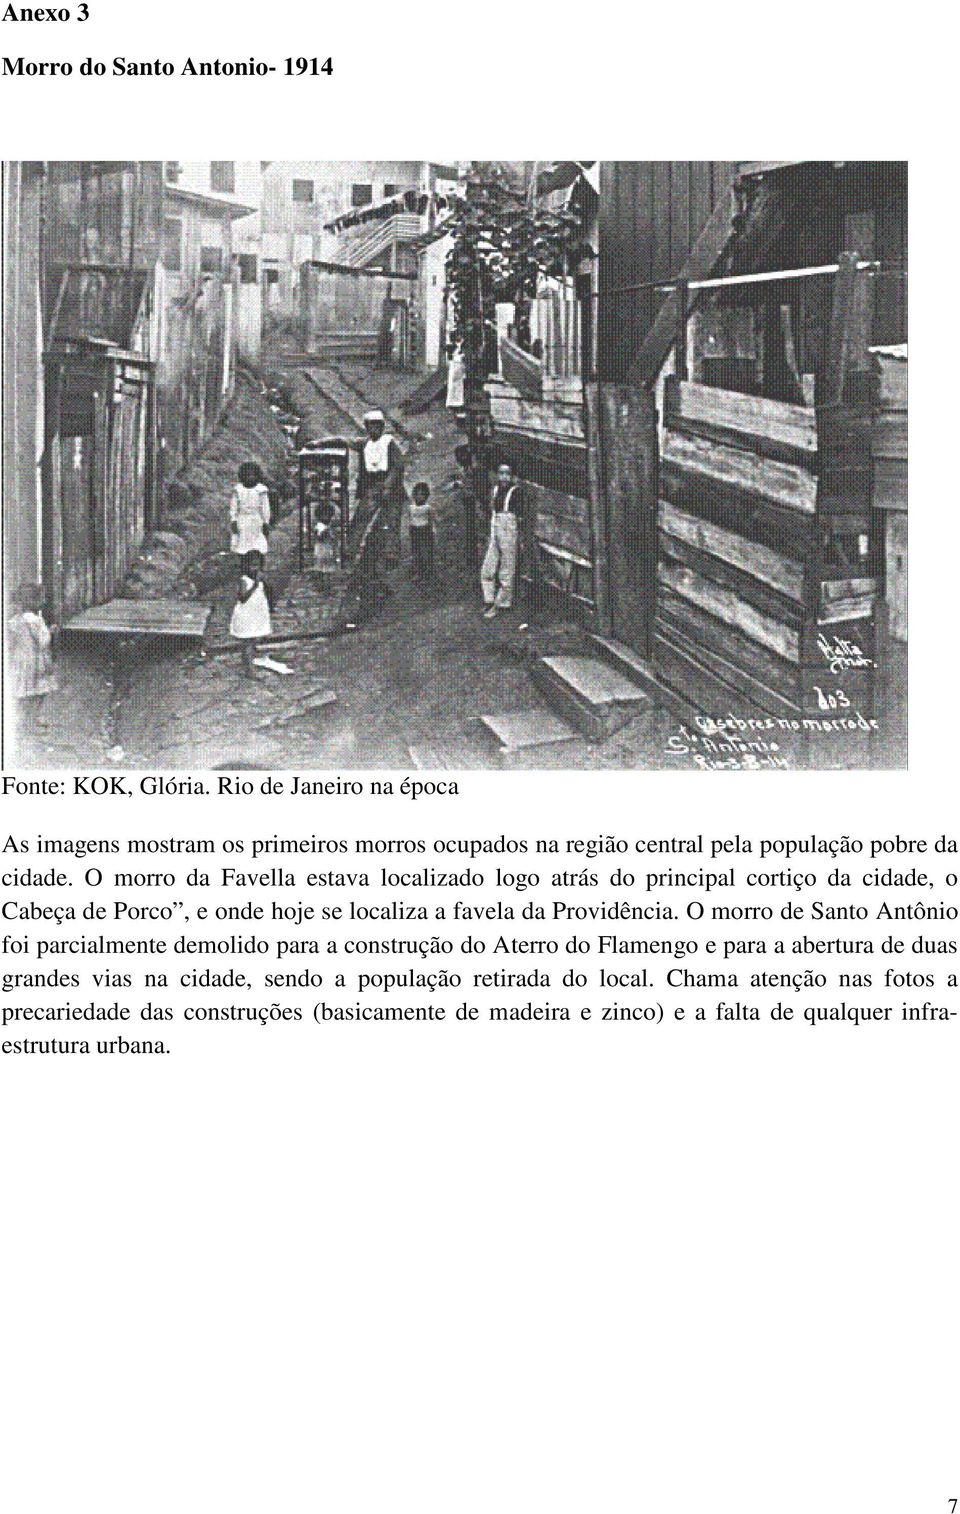 O morro da Favella estava localizado logo atrás do principal cortiço da cidade, o Cabeça de Porco, e onde hoje se localiza a favela da Providência.